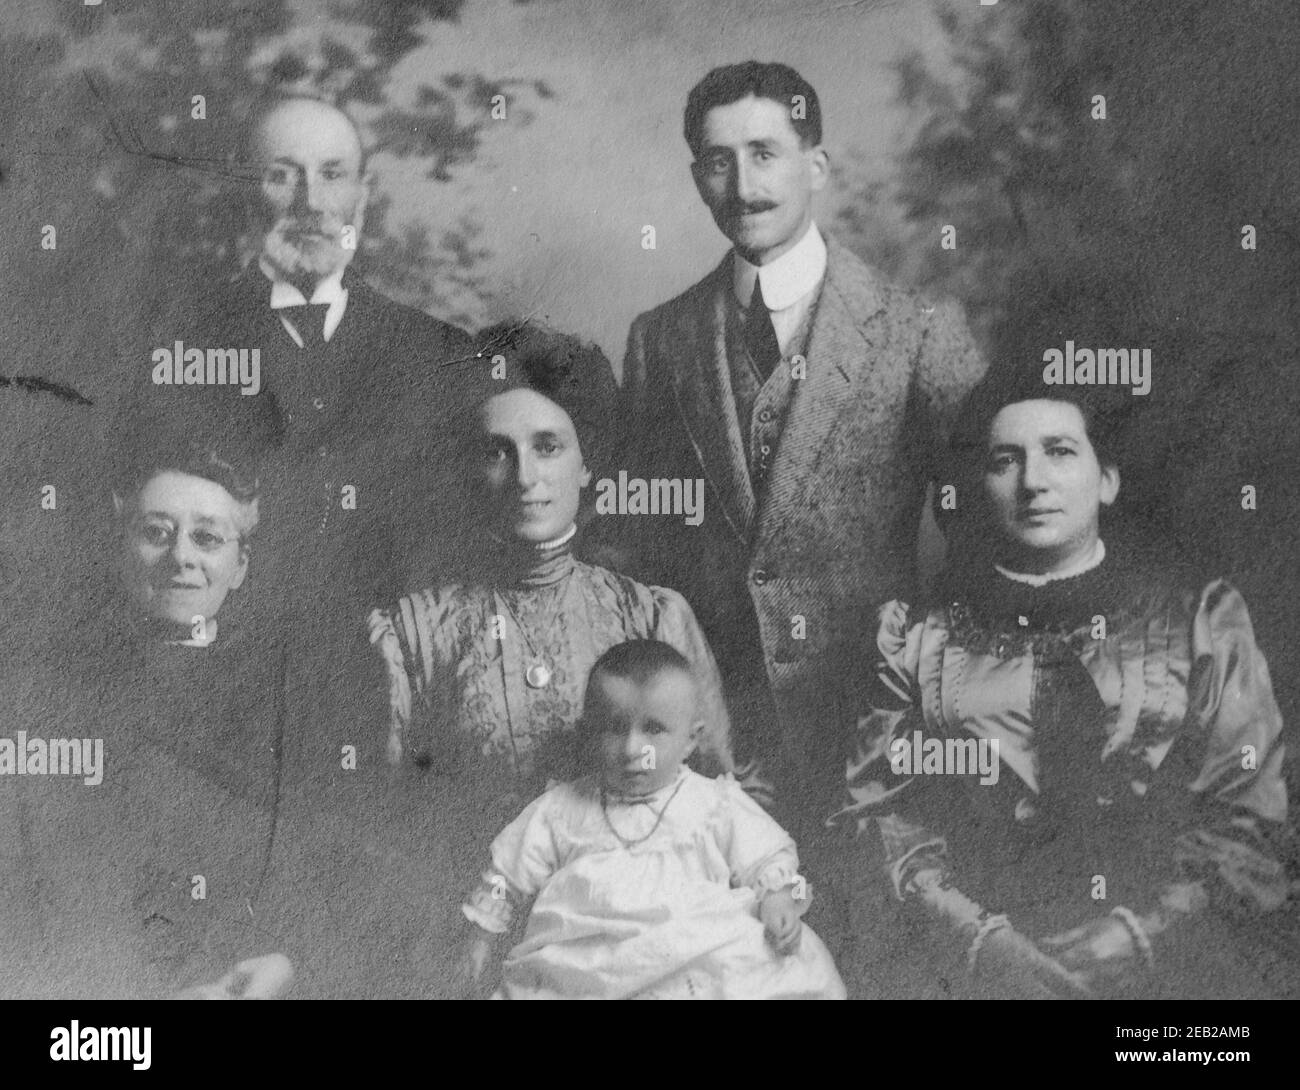 Fotografia monocromatica d'epoca di una famiglia di tre generazioni risalente ai primi anni del 1900, era edoardiana. Foto Stock